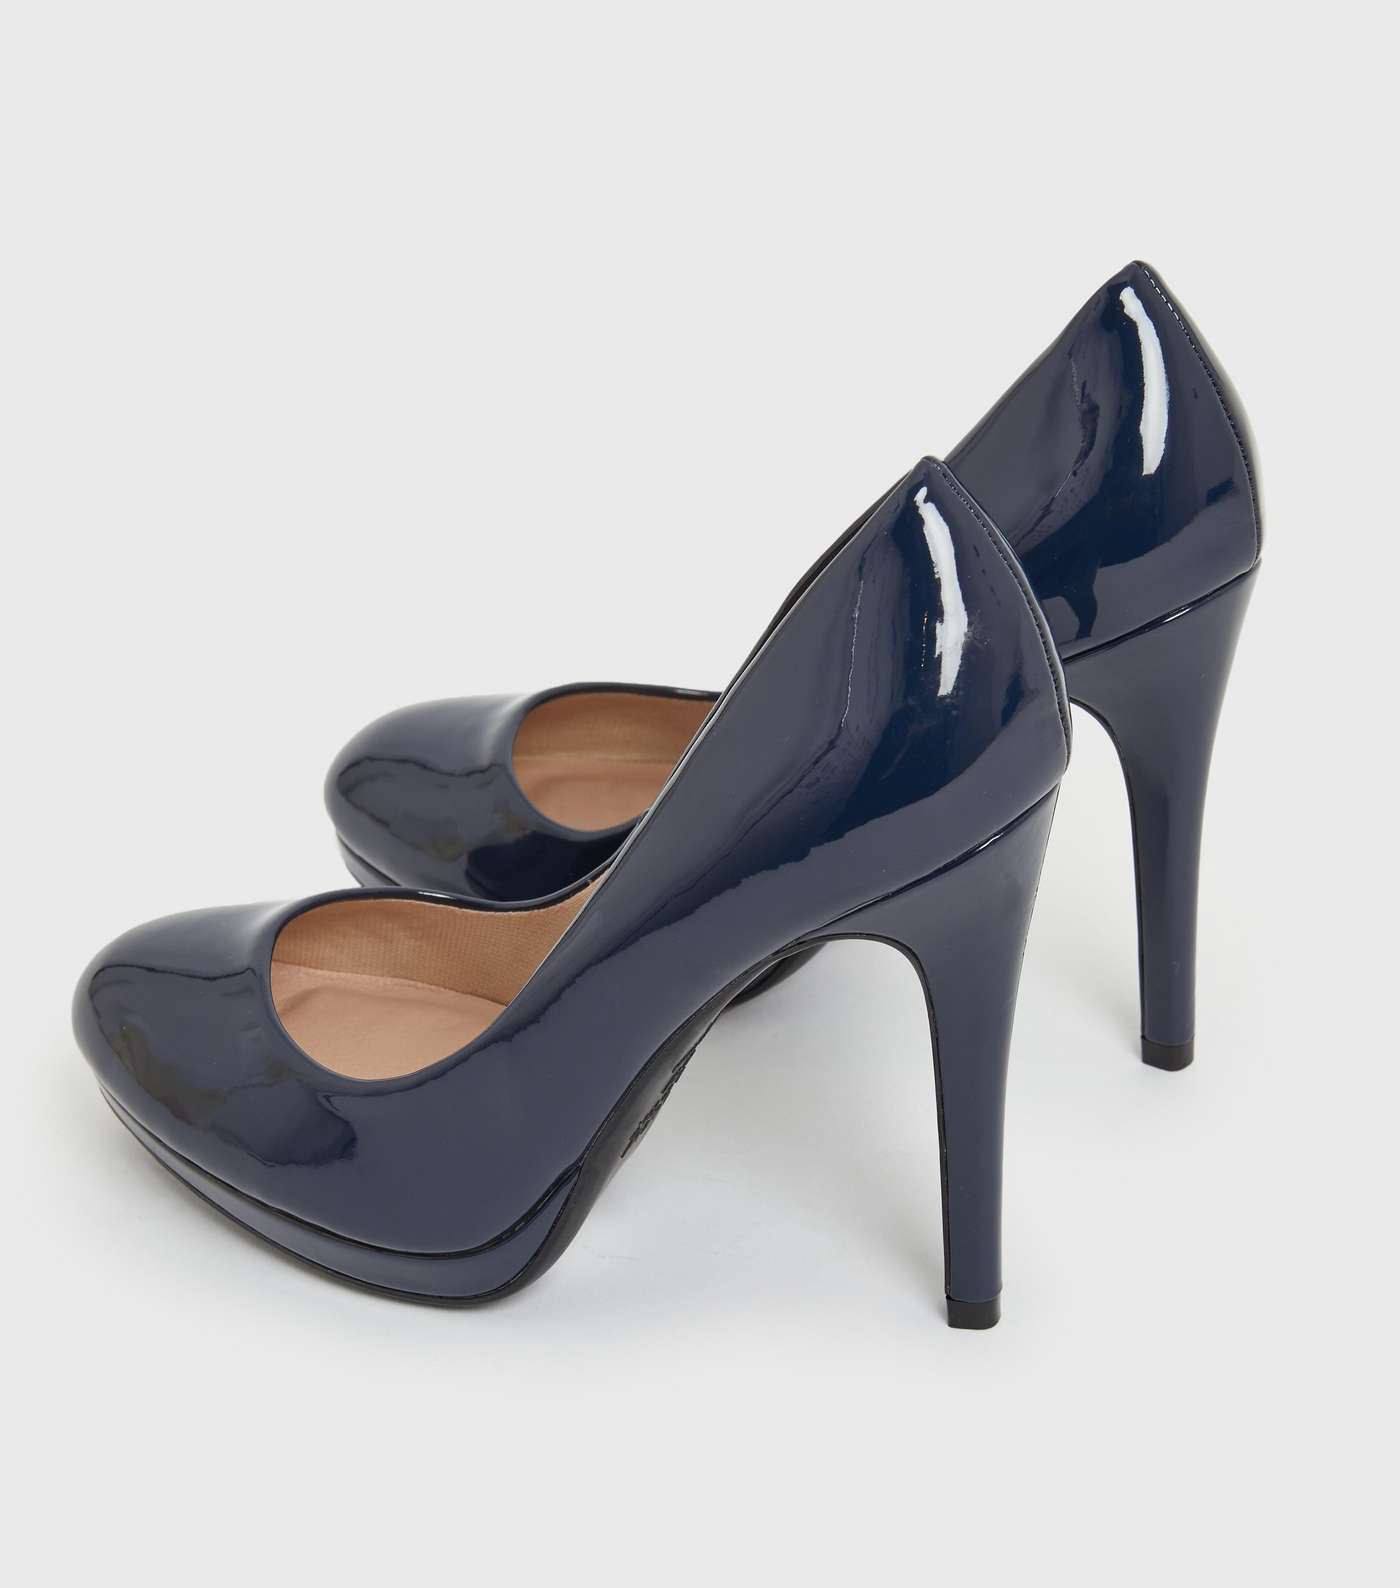 Navy Patent Round Platform Stiletto Heel Court Shoes Image 4